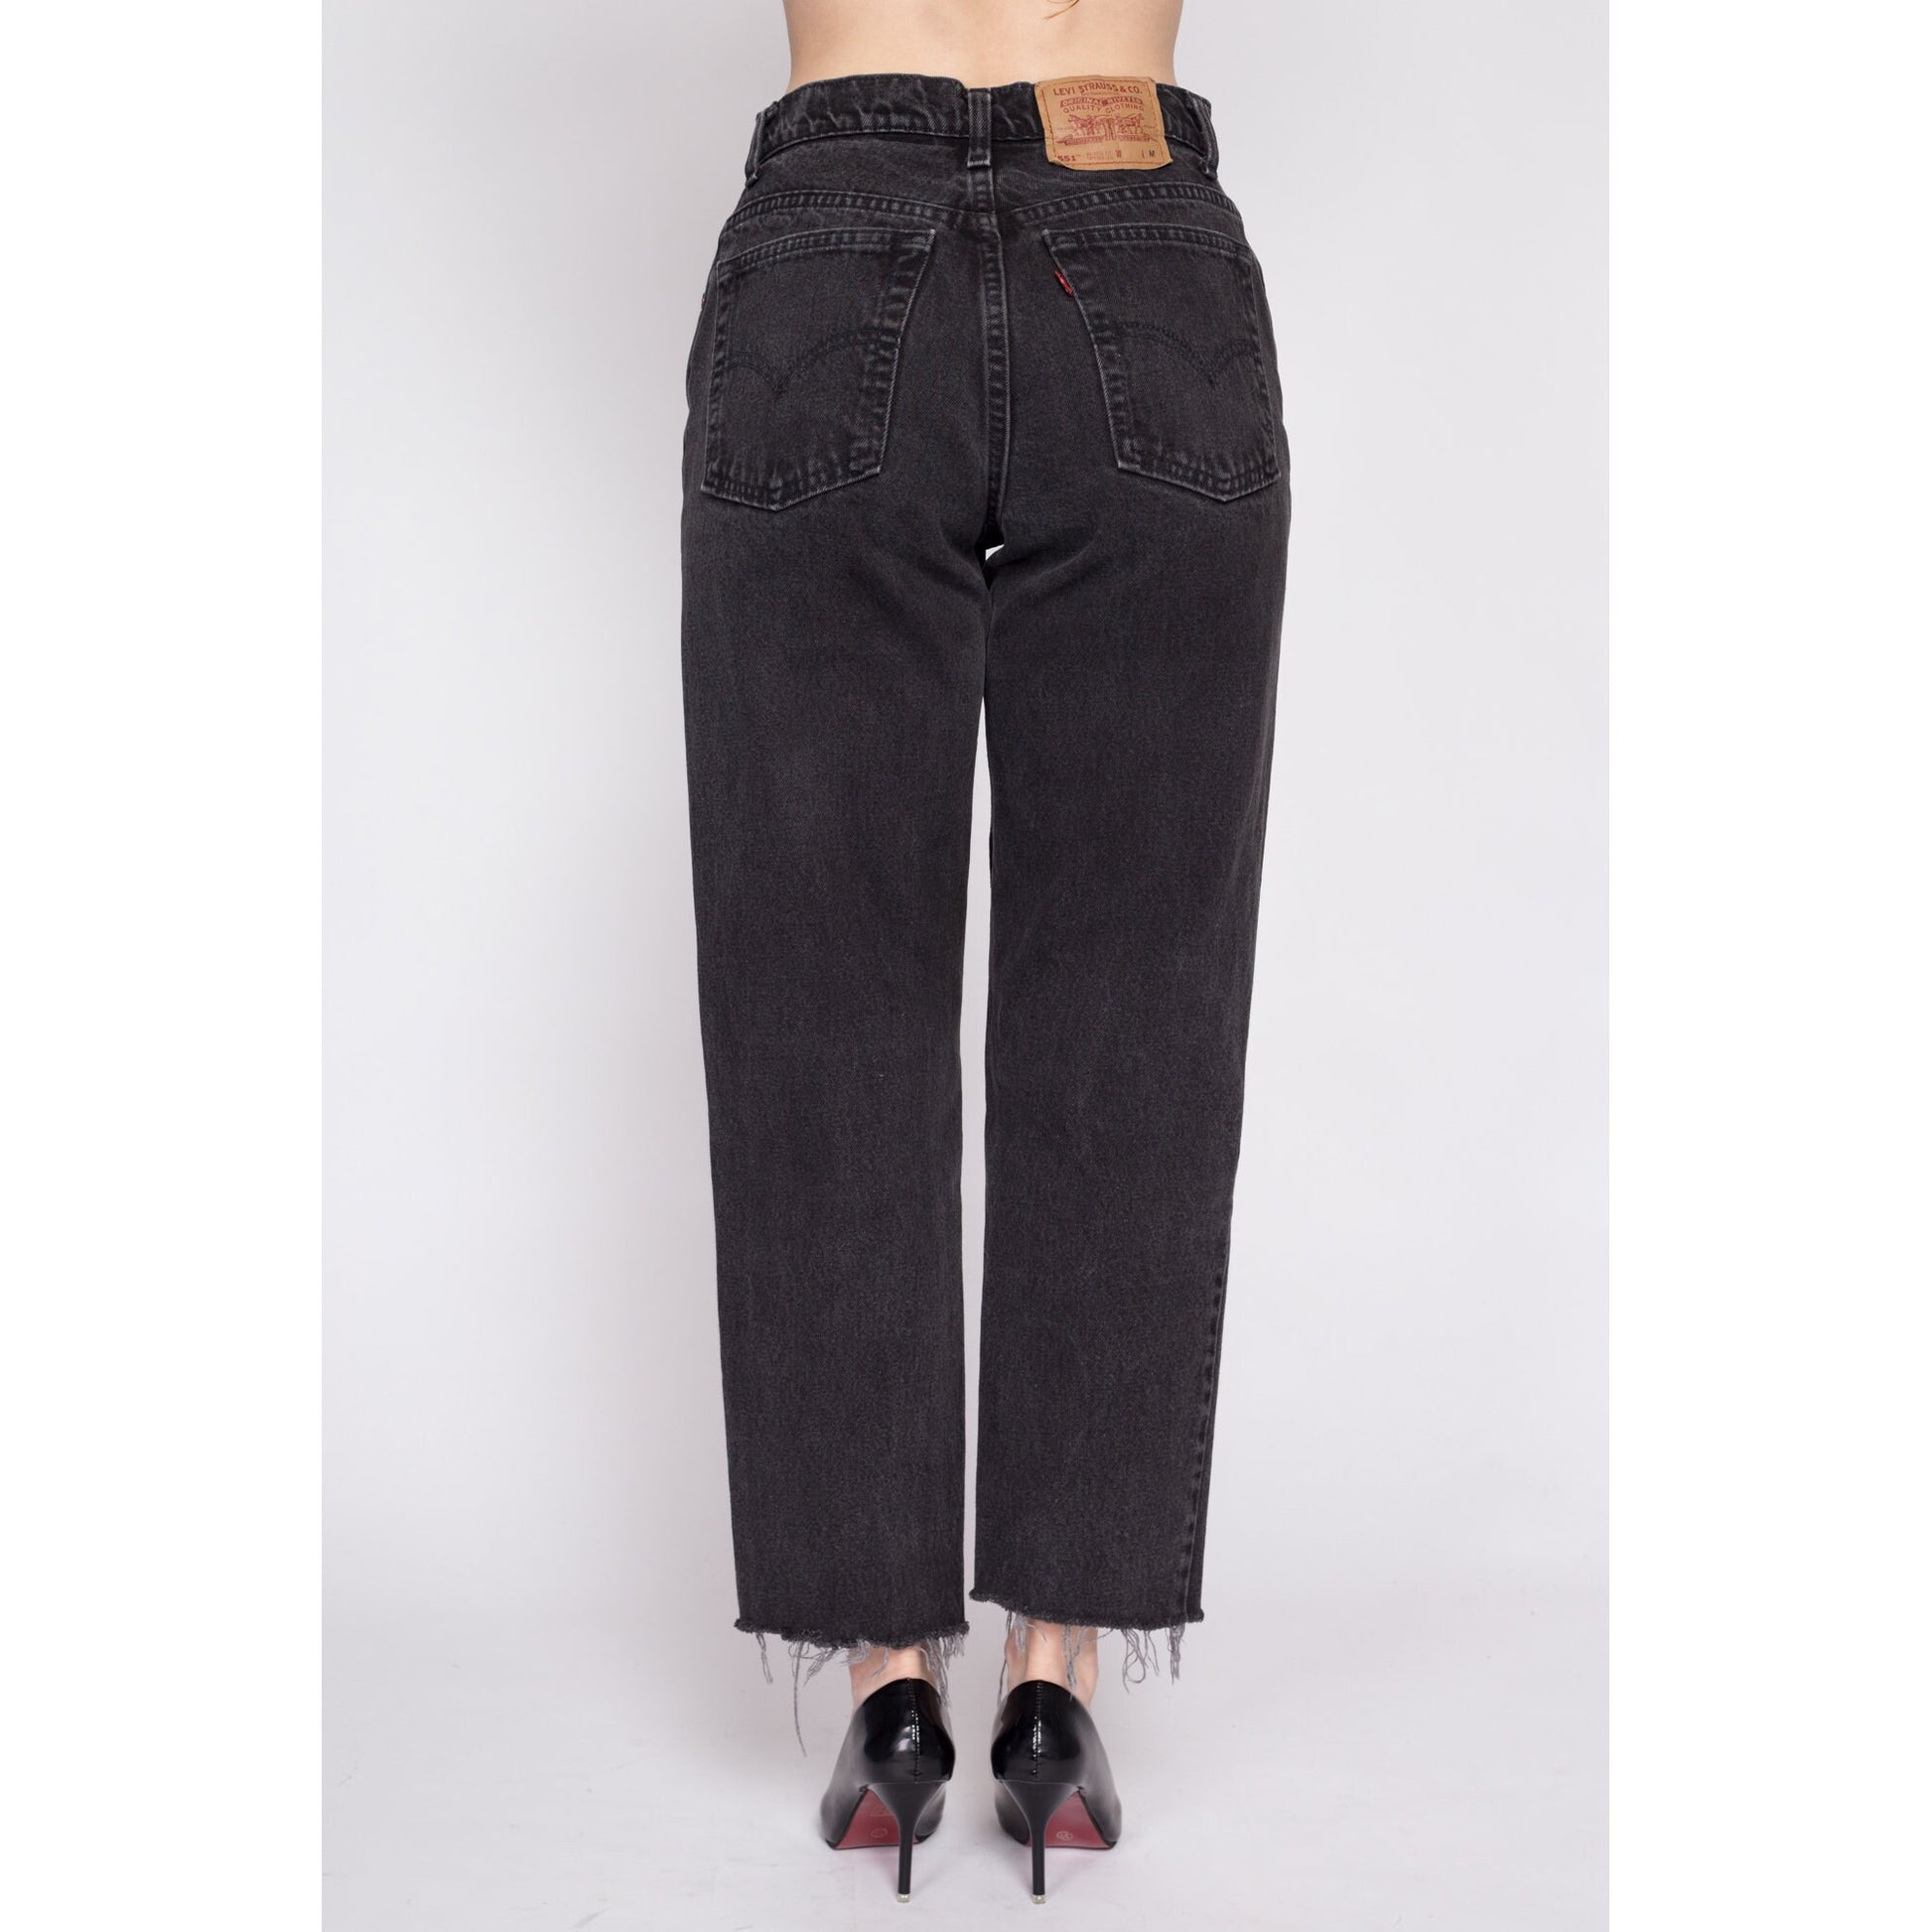 Vintage Levis 551 Black Cut Off Jeans - Medium, 29" – Apple Vintage